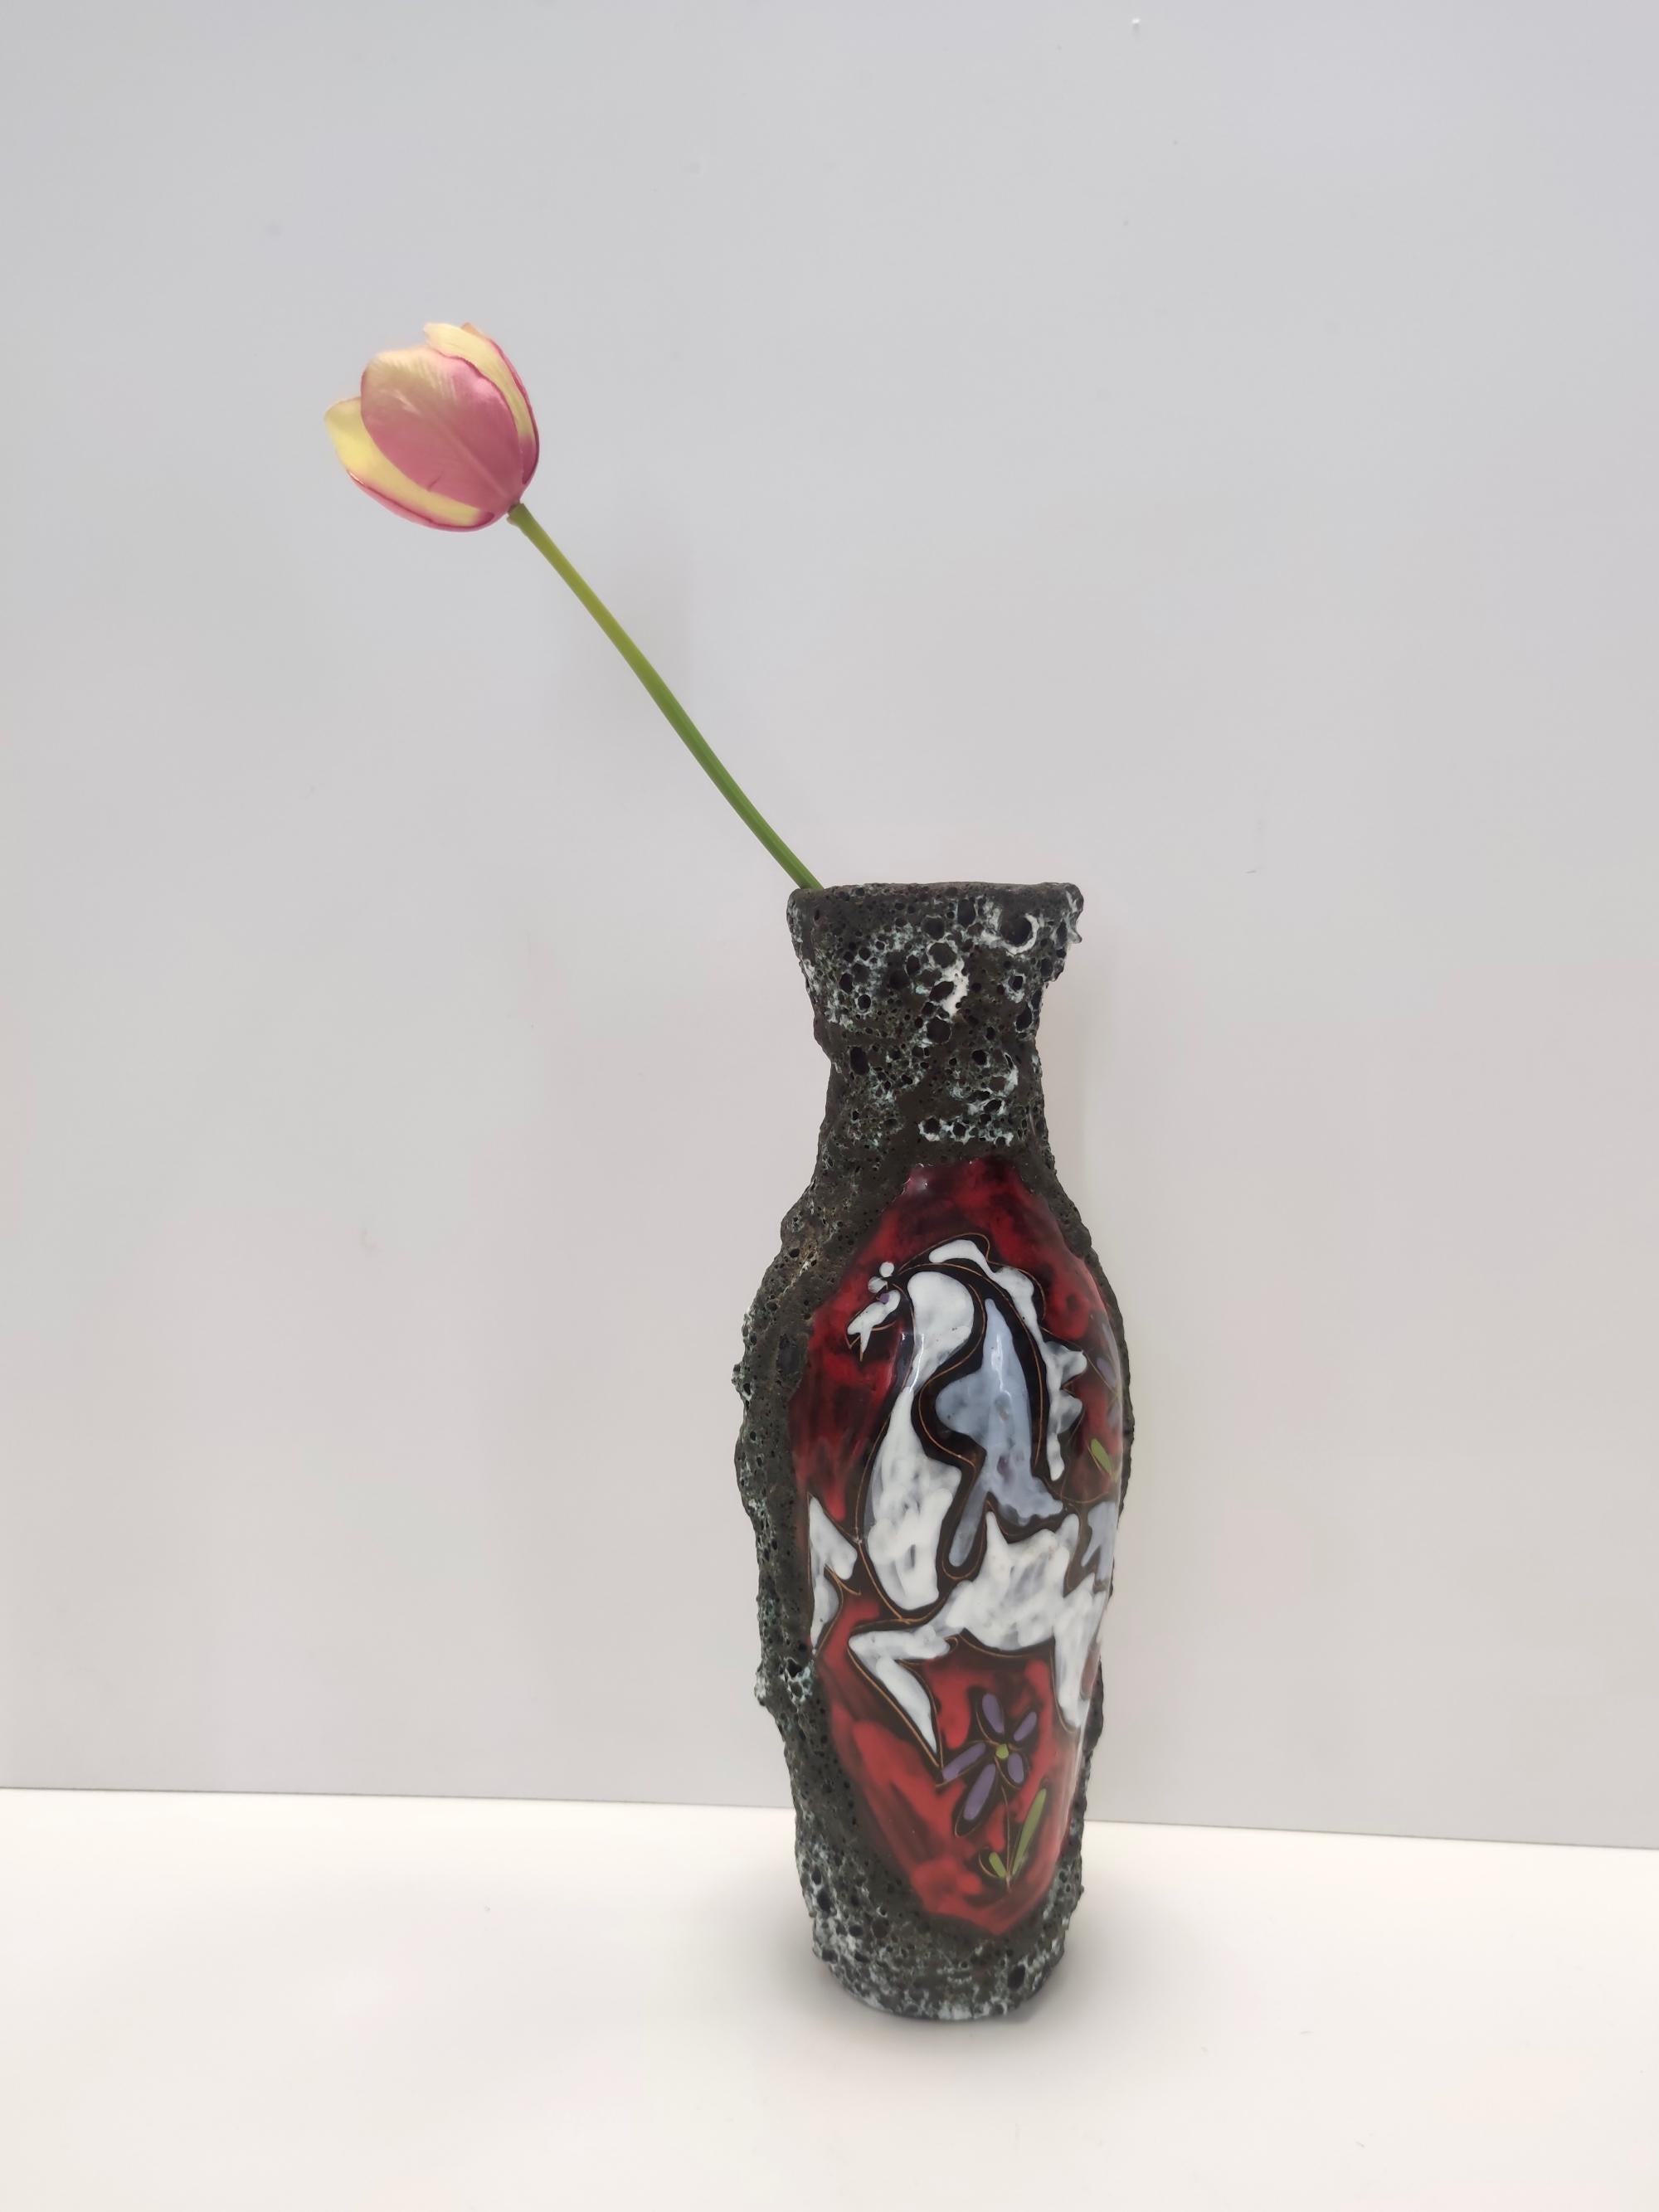 Fabriqué en Italie par Giulianelli pour ceramiche San Marino dans les années 50. 
Ce vase est fabriqué en faïence modelée et imprimée à la main.
Il s'agit d'une pièce vintage, elle peut donc présenter de légères traces d'utilisation, mais elle peut